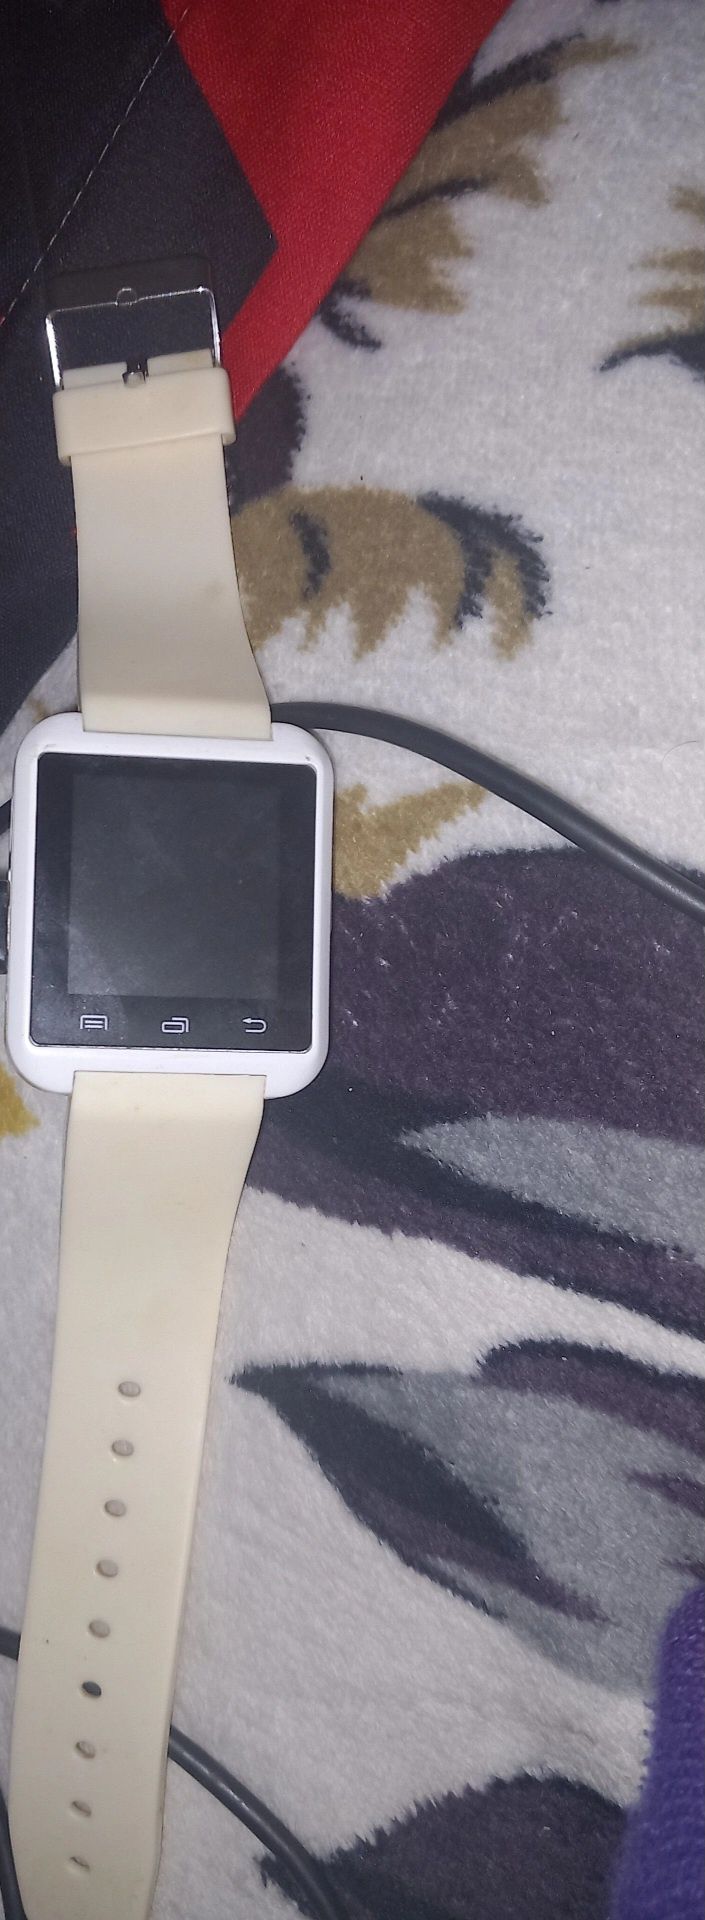 Vând Smartwatch in stare bună